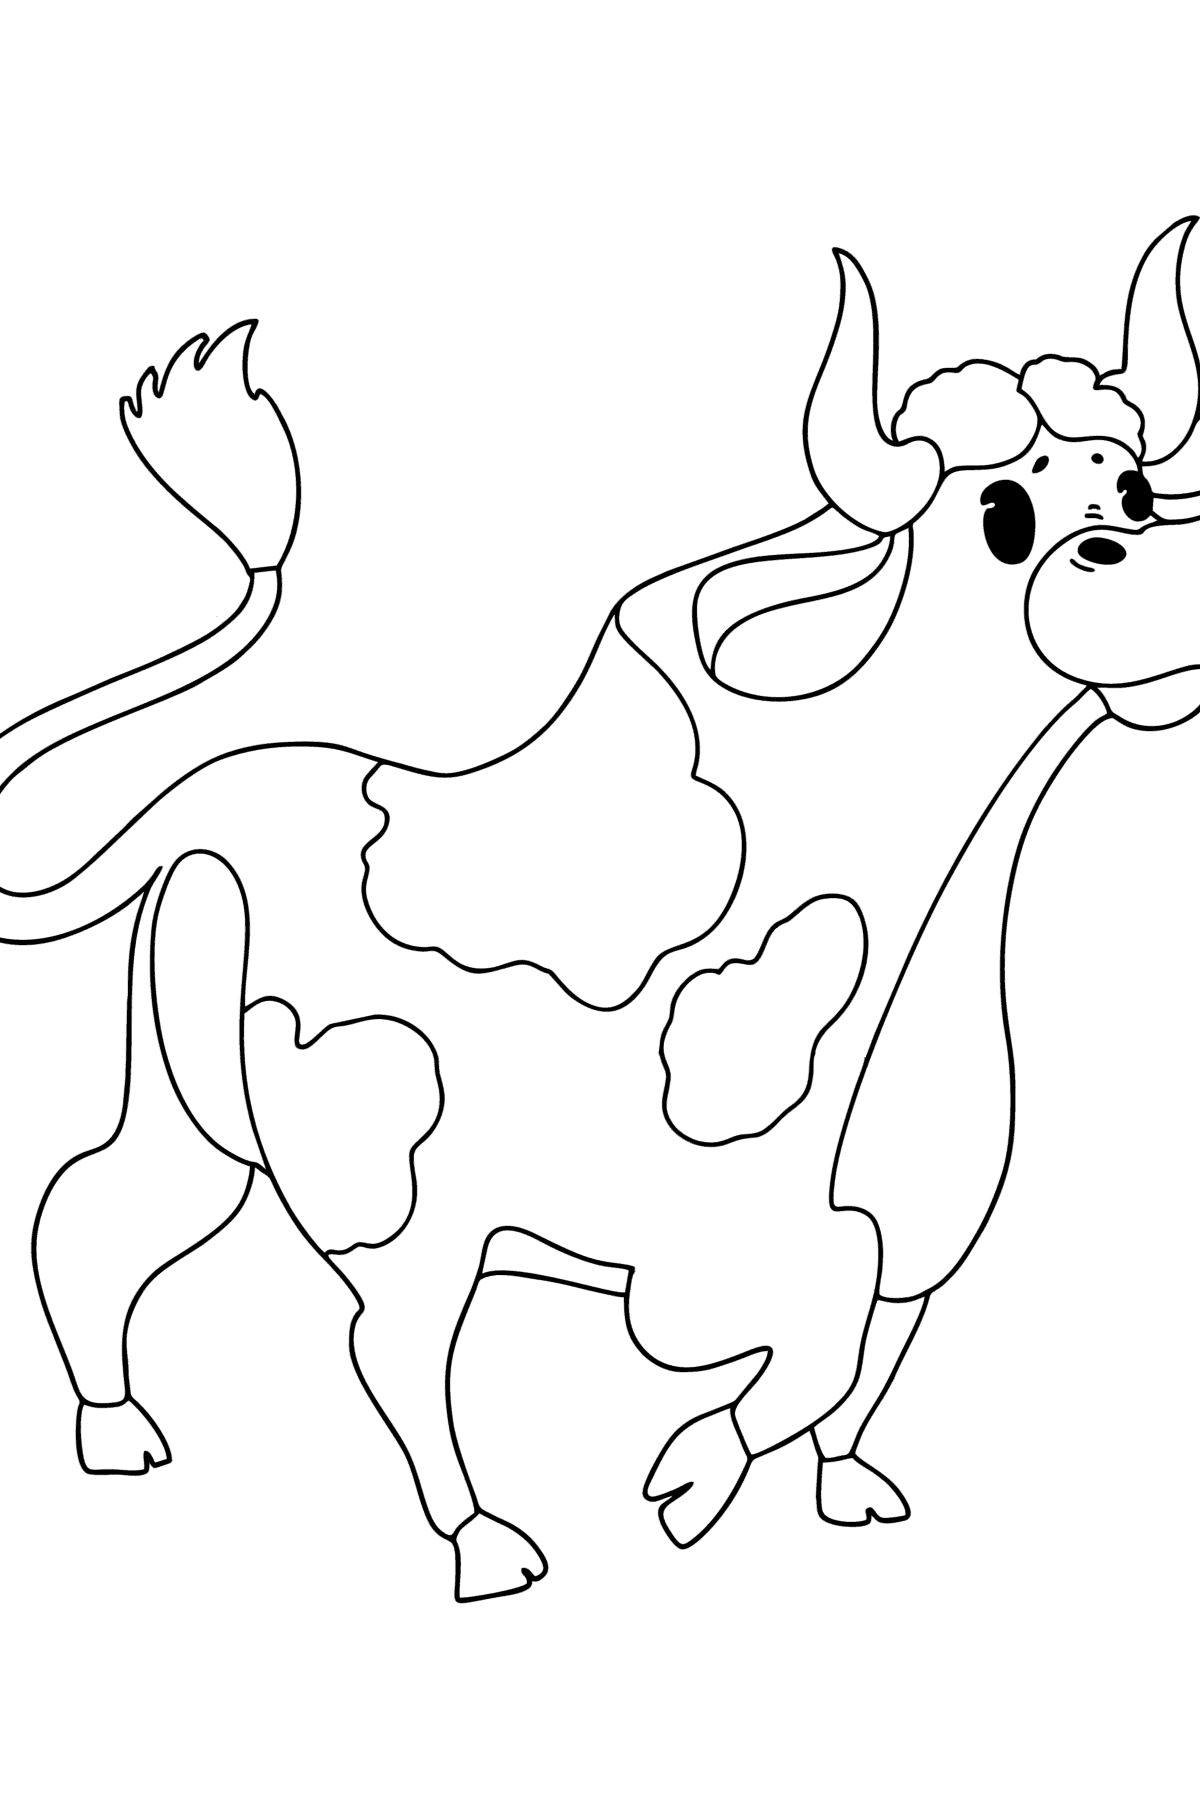 Раскраска рисунок быка - Картинки для Детей